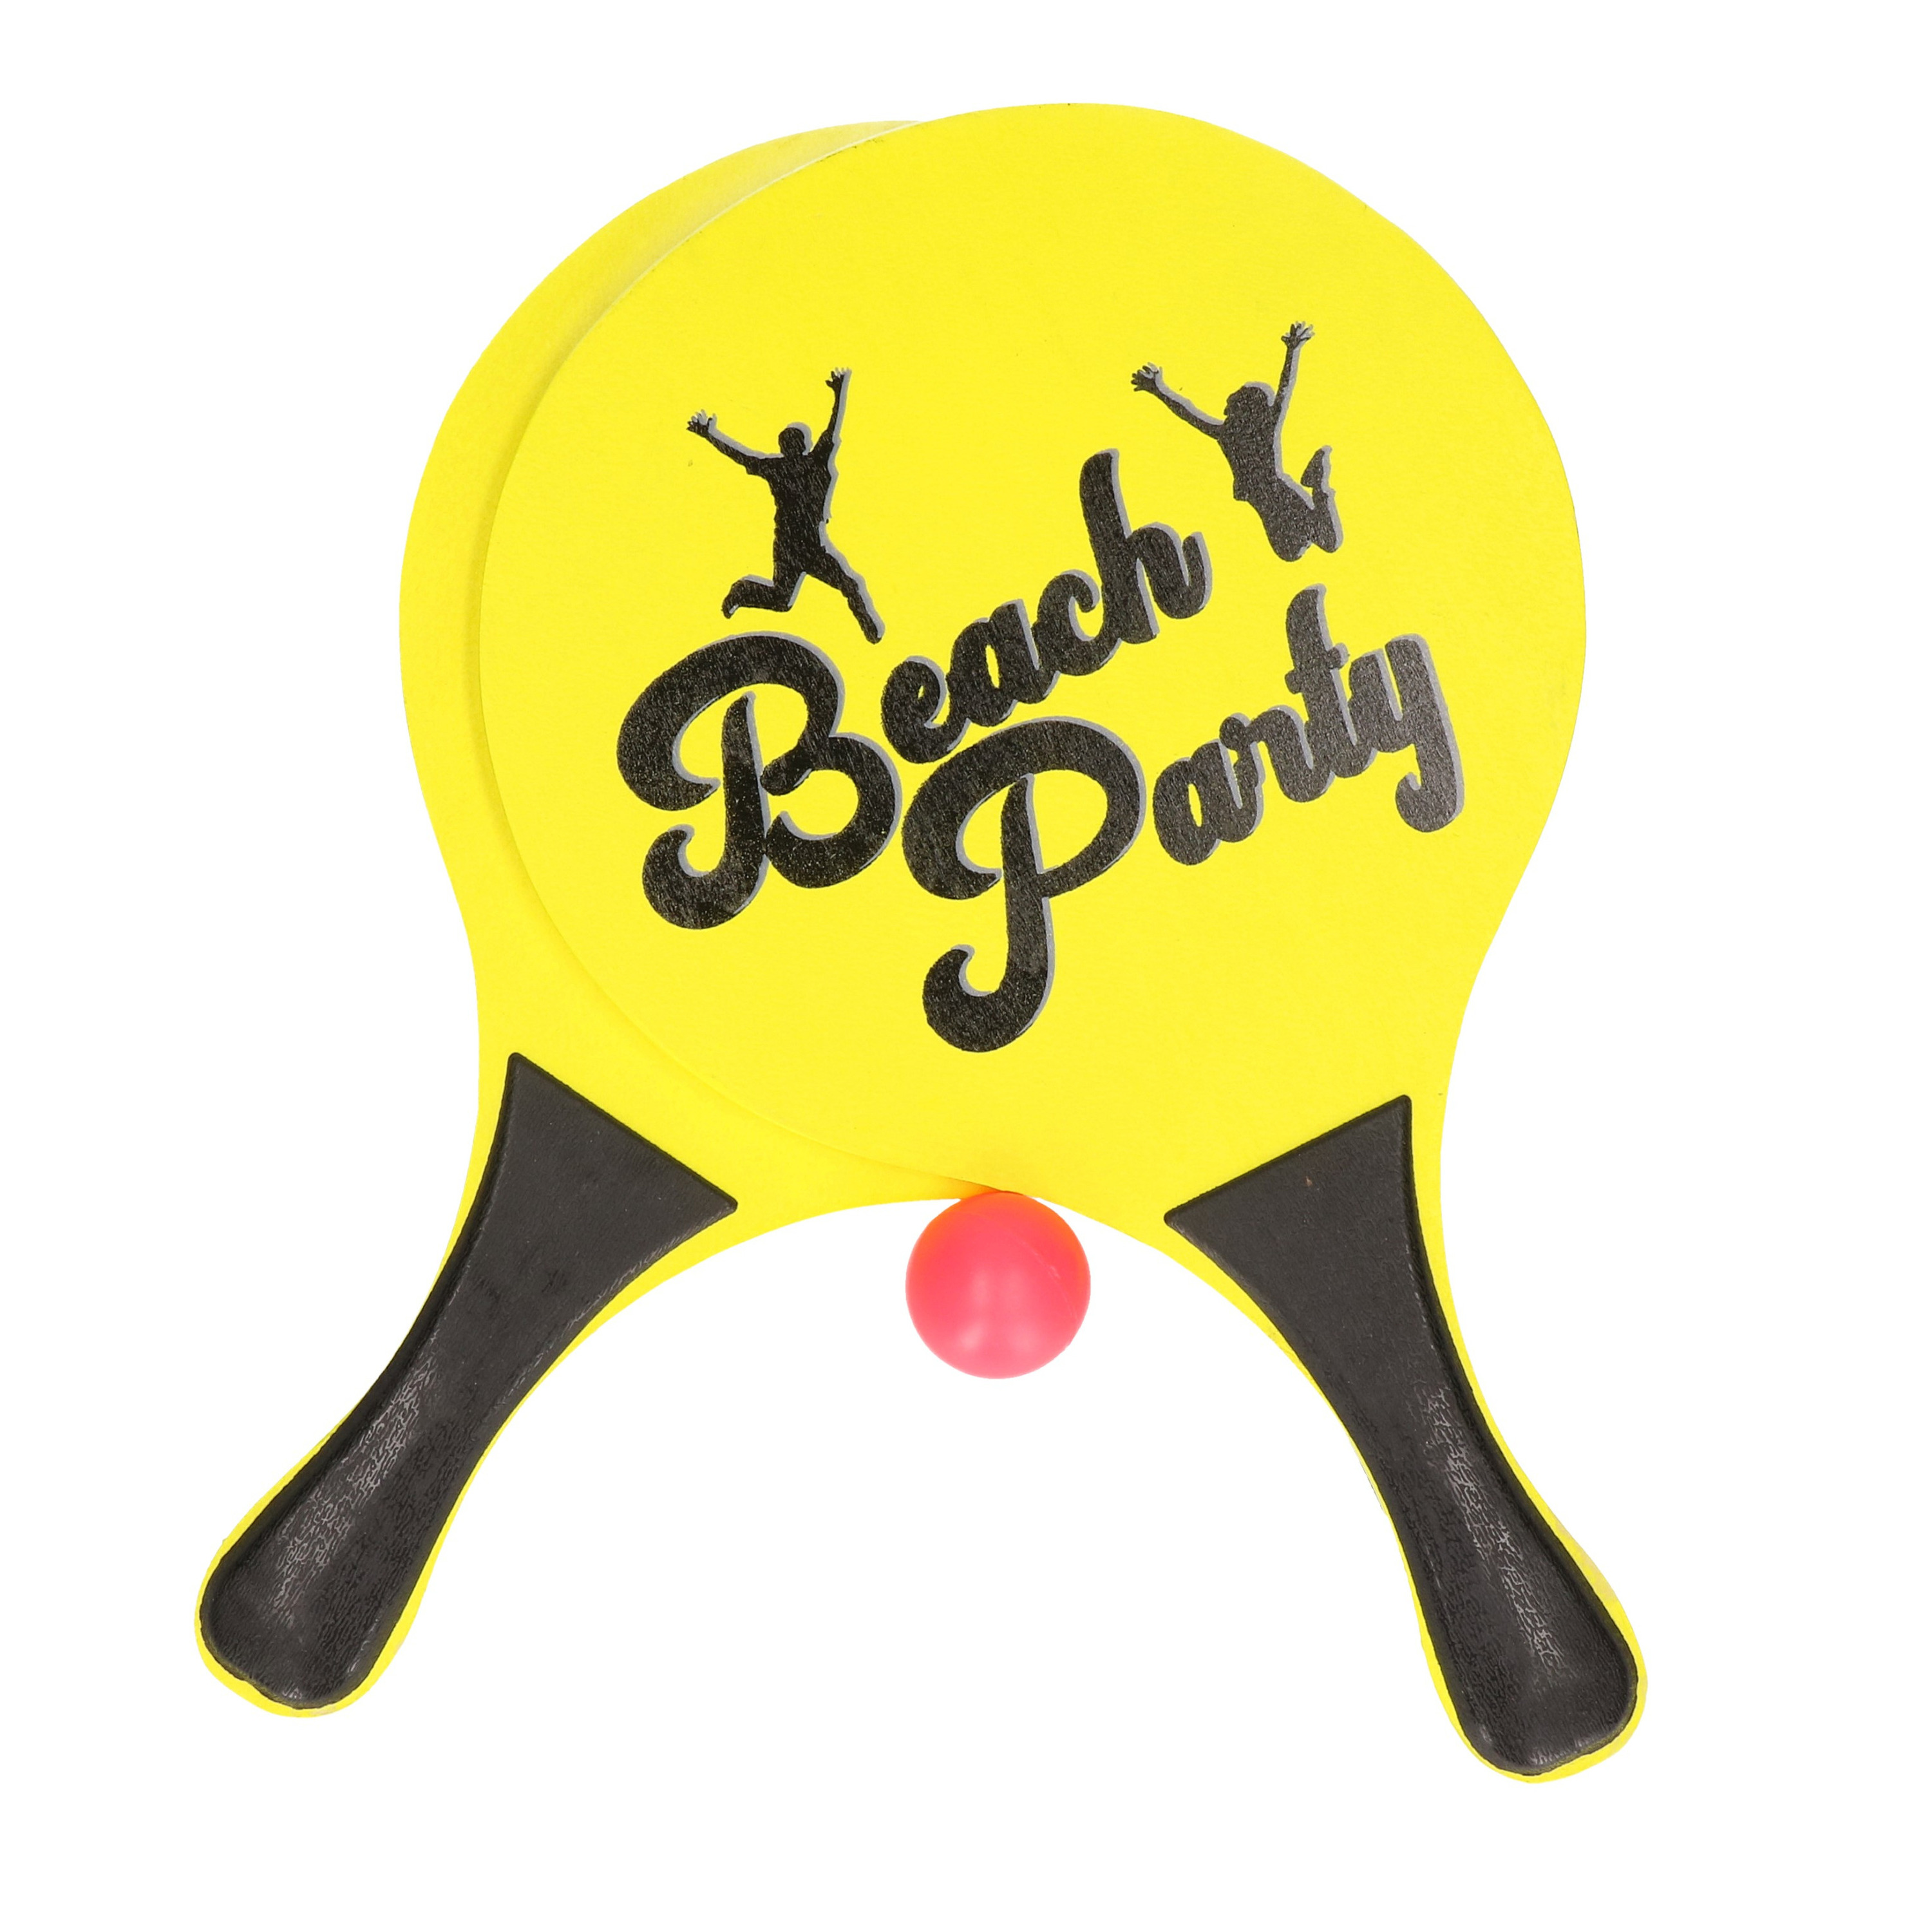 Actief speelgoed tennis-beachball setje geel